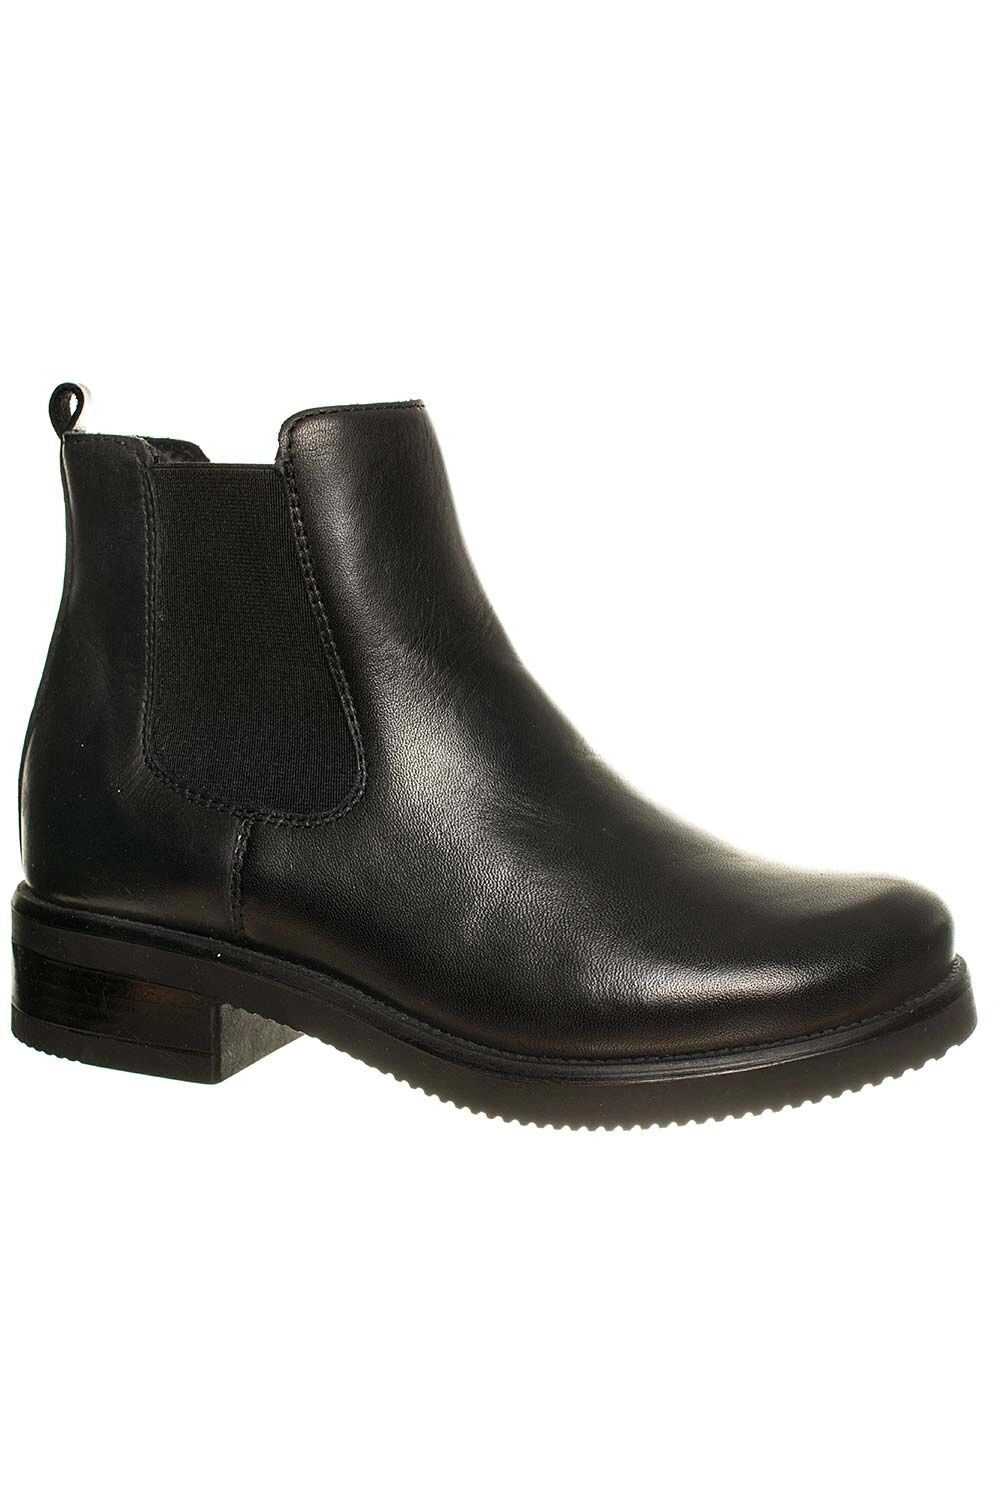 ZIGN dámské kotníkové boty kožené černé Velikost: EU 36